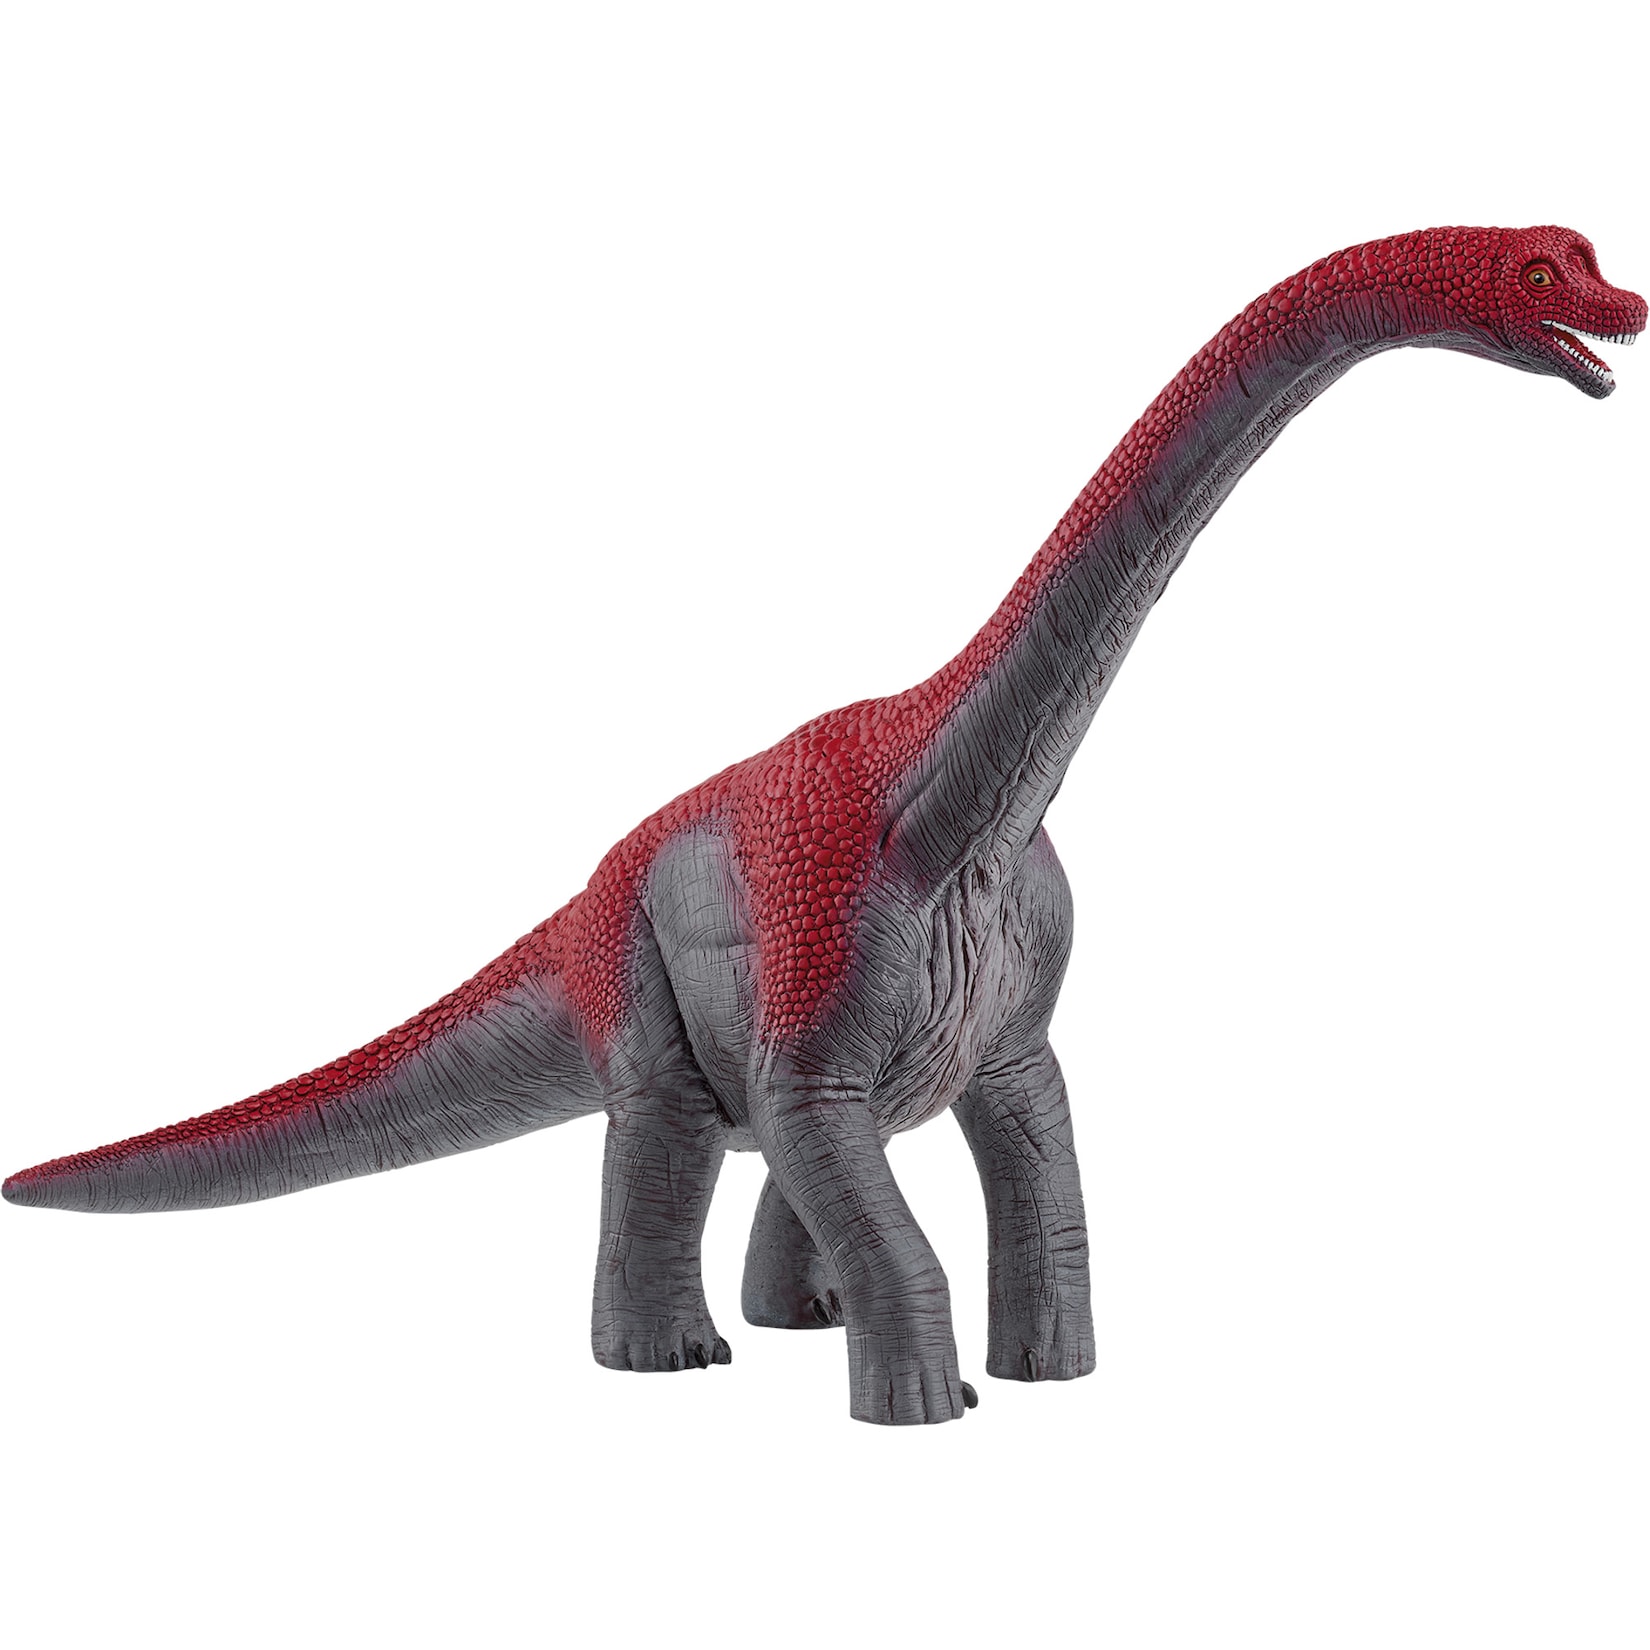 Schleich Spielfigur Dinosaurs Brachiosaurus